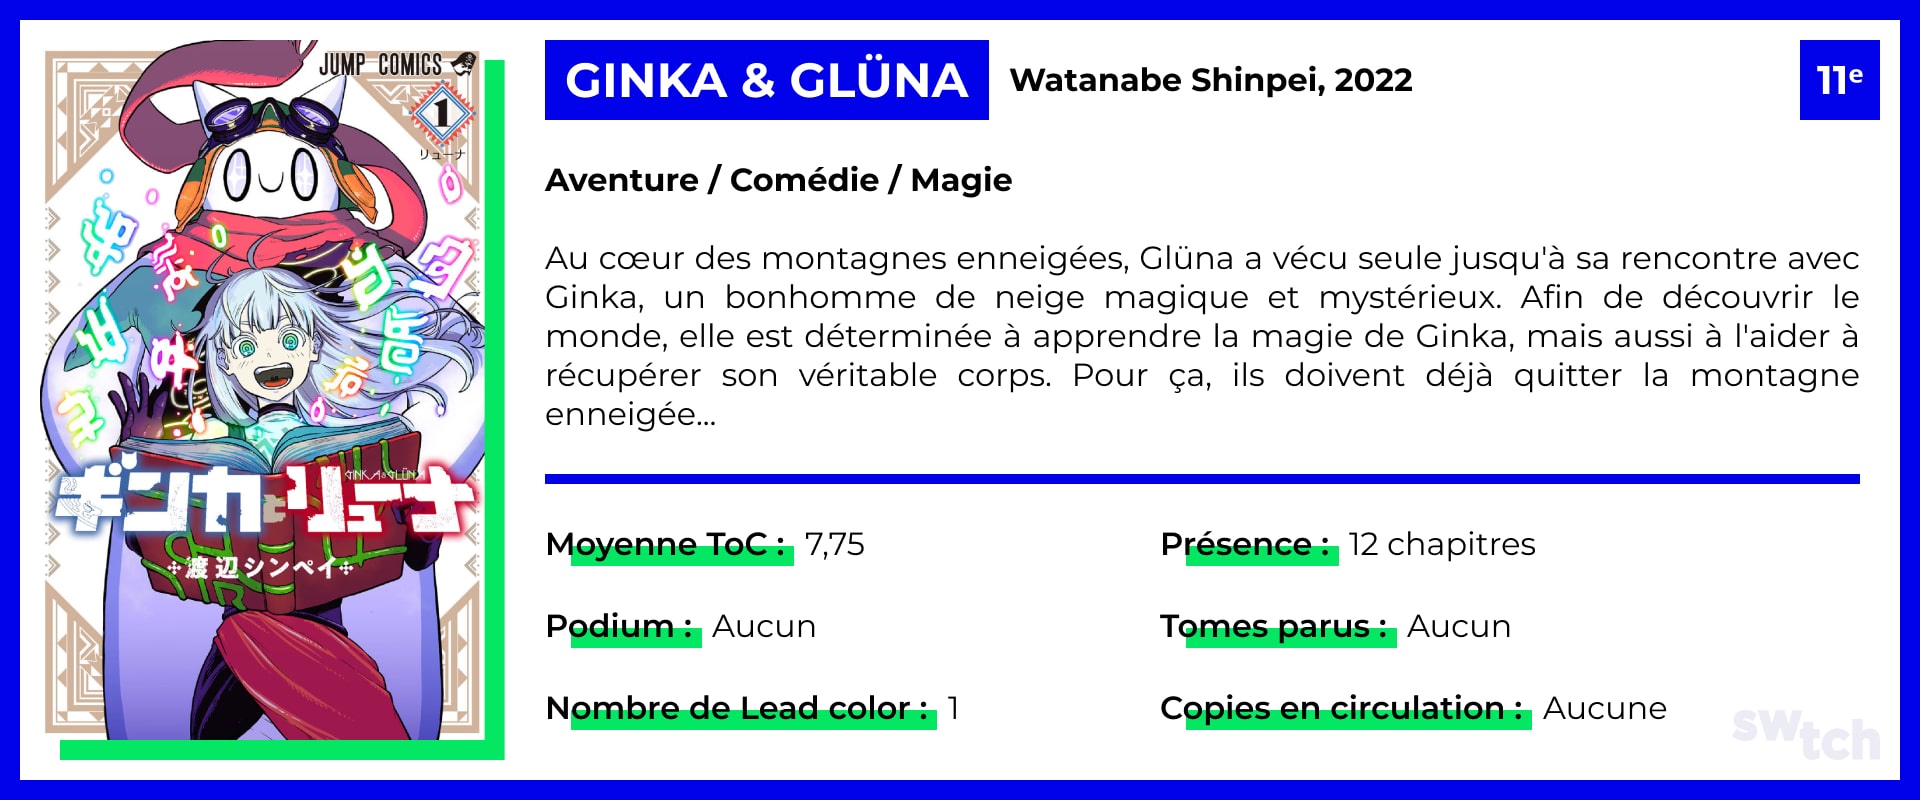 Ginka & Gluna